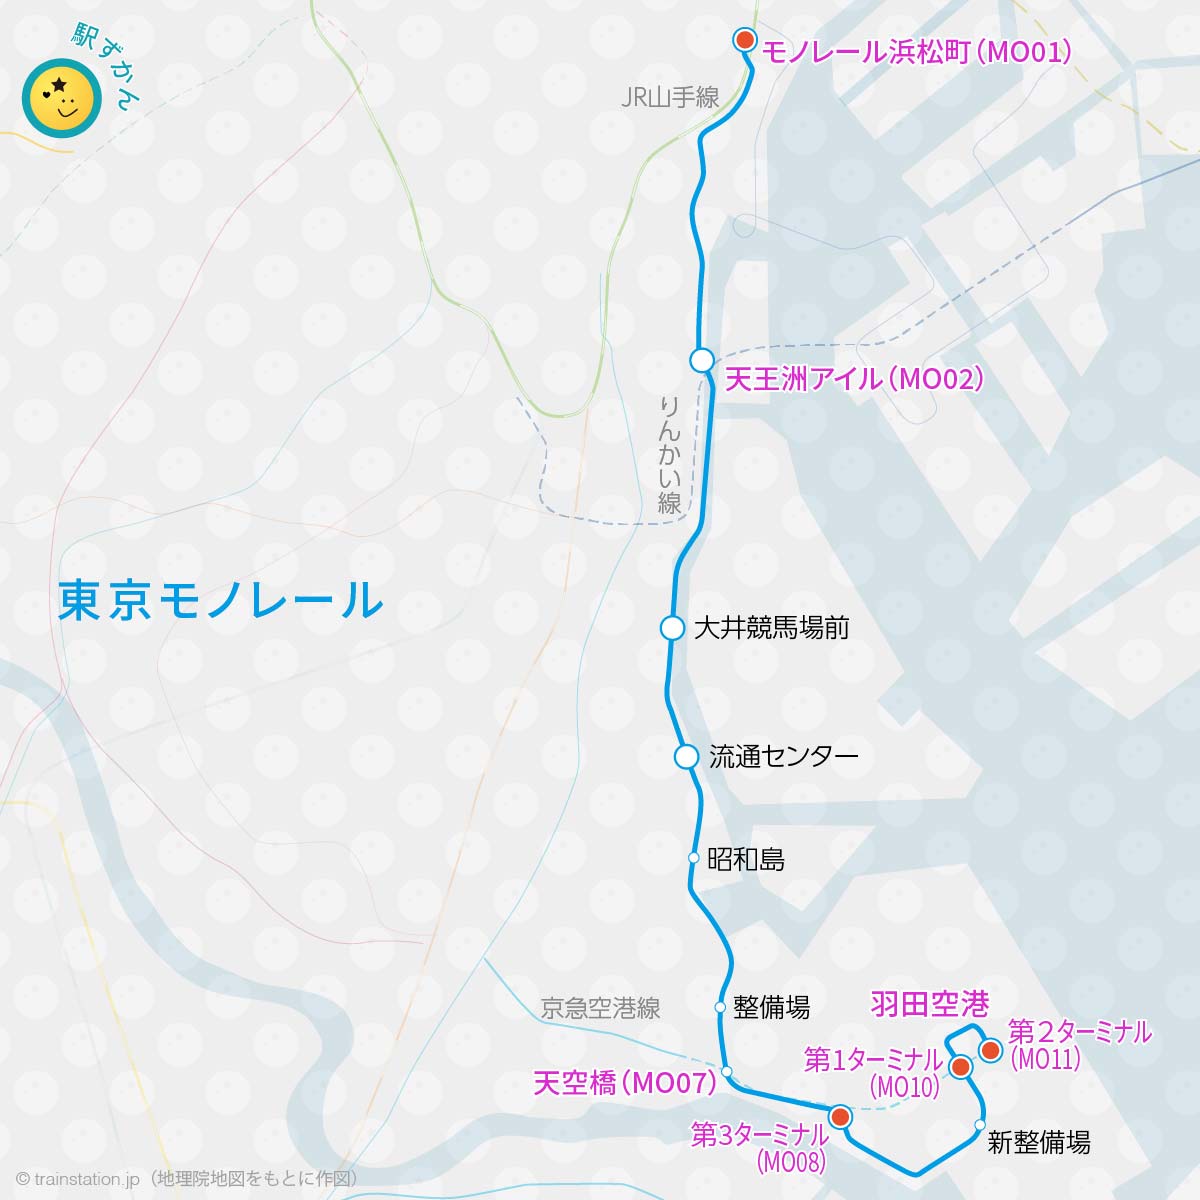 東京モノレール路線図